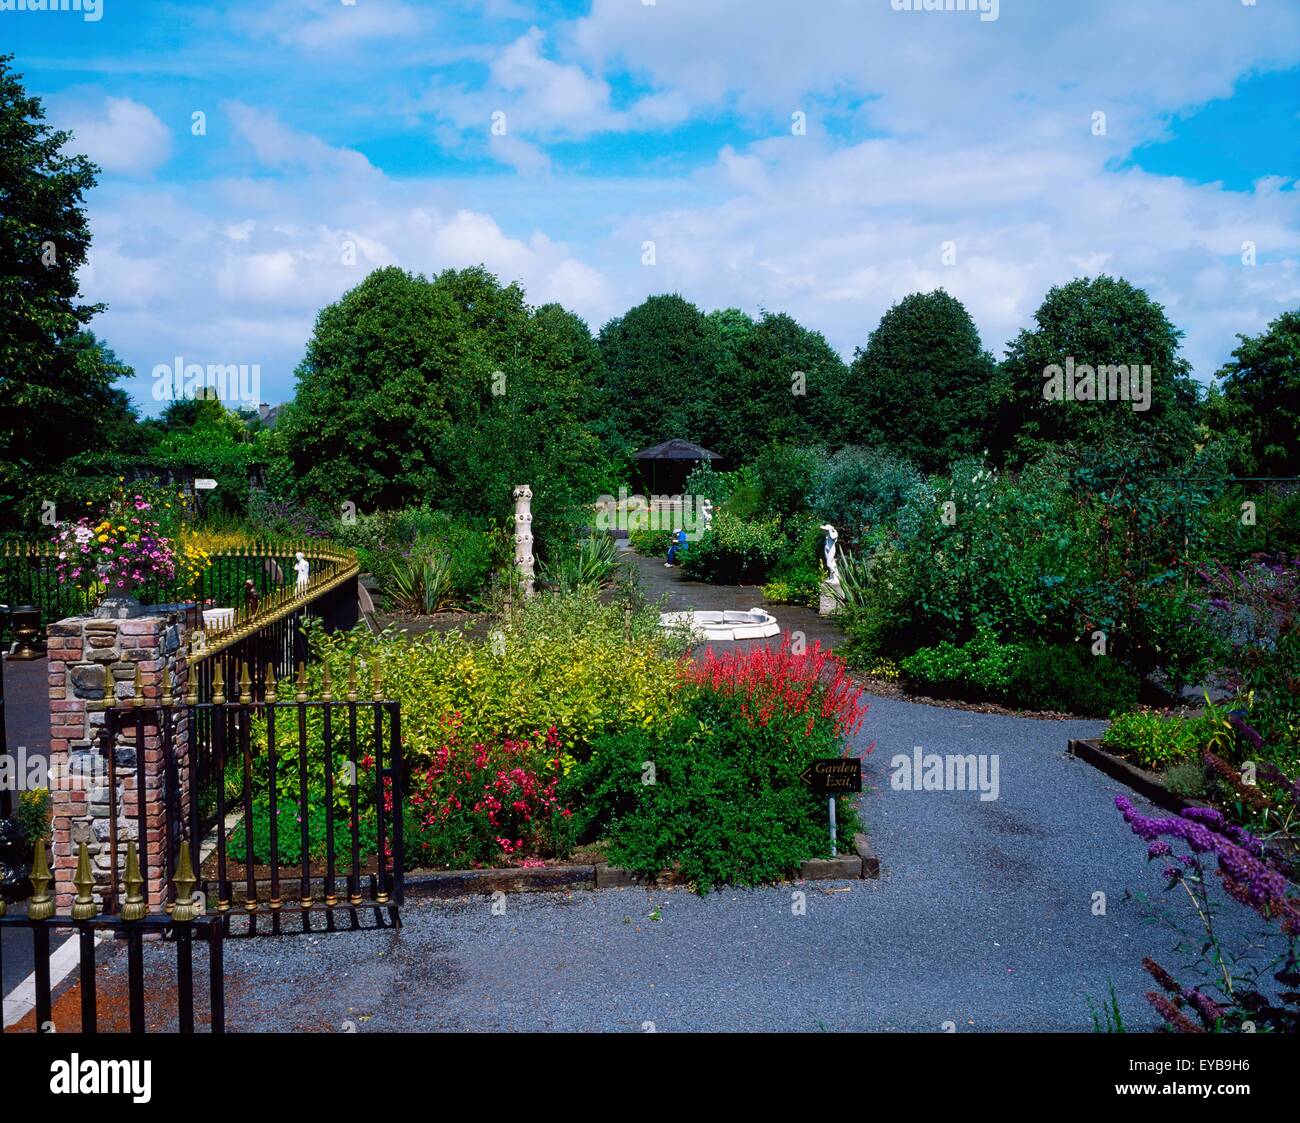 Sensory Gardens, Abbeyleix, Co Laois, Ireland Stock Photo